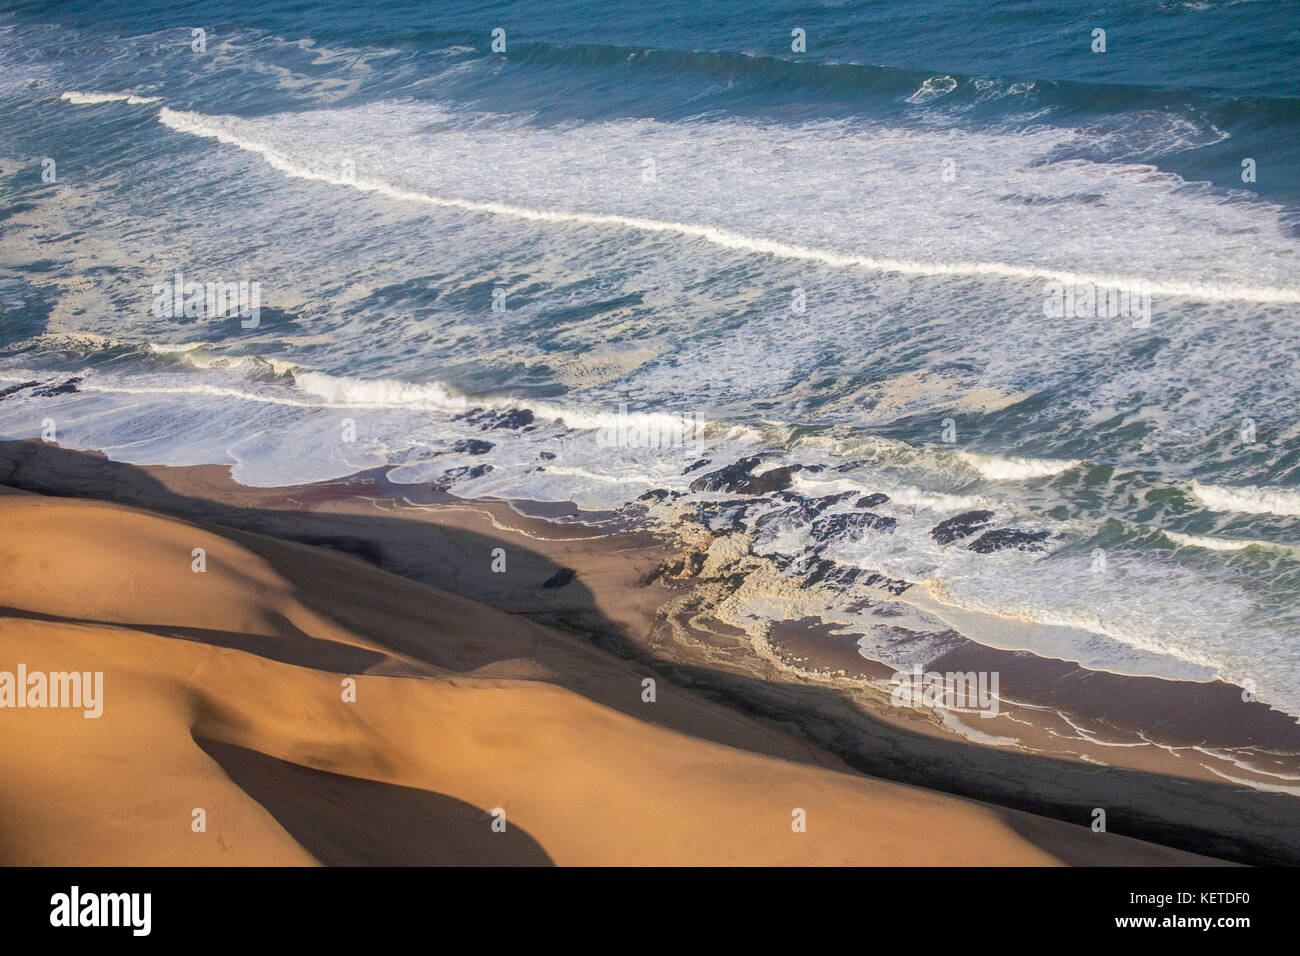 Vista aerea delle onde dell'Oceano Atlantico a schiantarsi contro le dune di sabbia del deserto del Namib namibia Africa australe Foto Stock